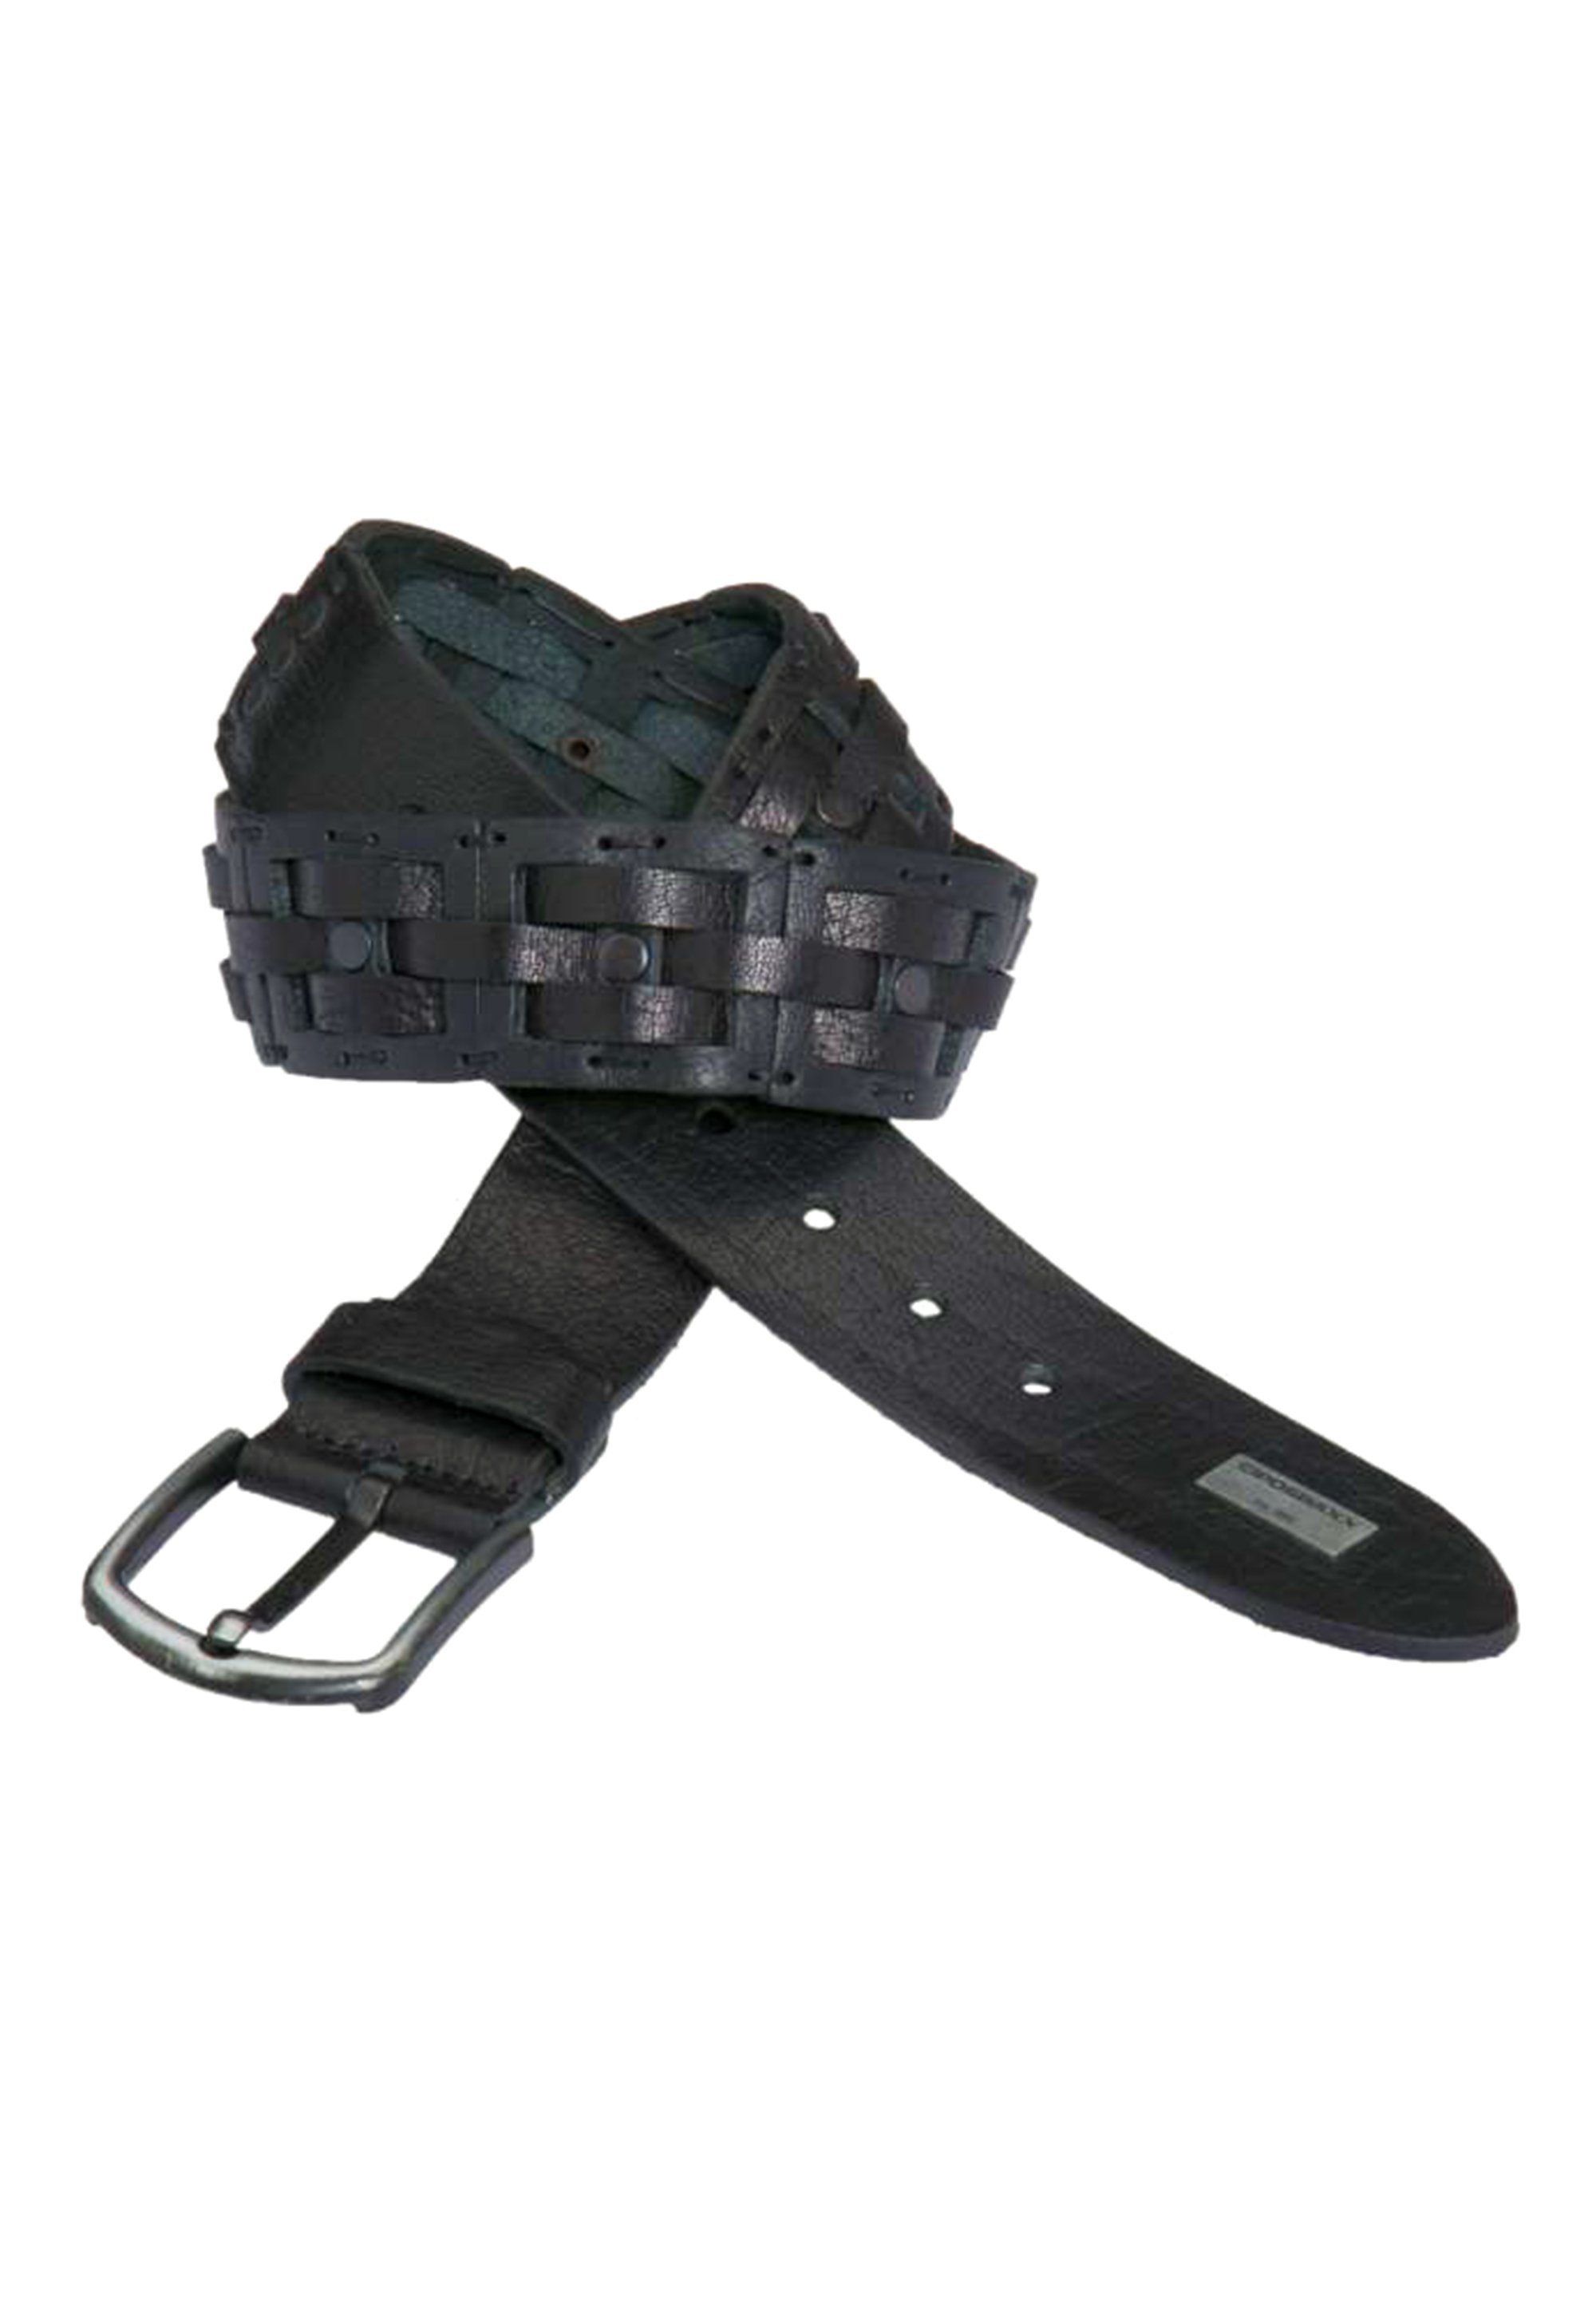 Cipo & Casual-Look schwarz Ledergürtel stylischen Baxx im